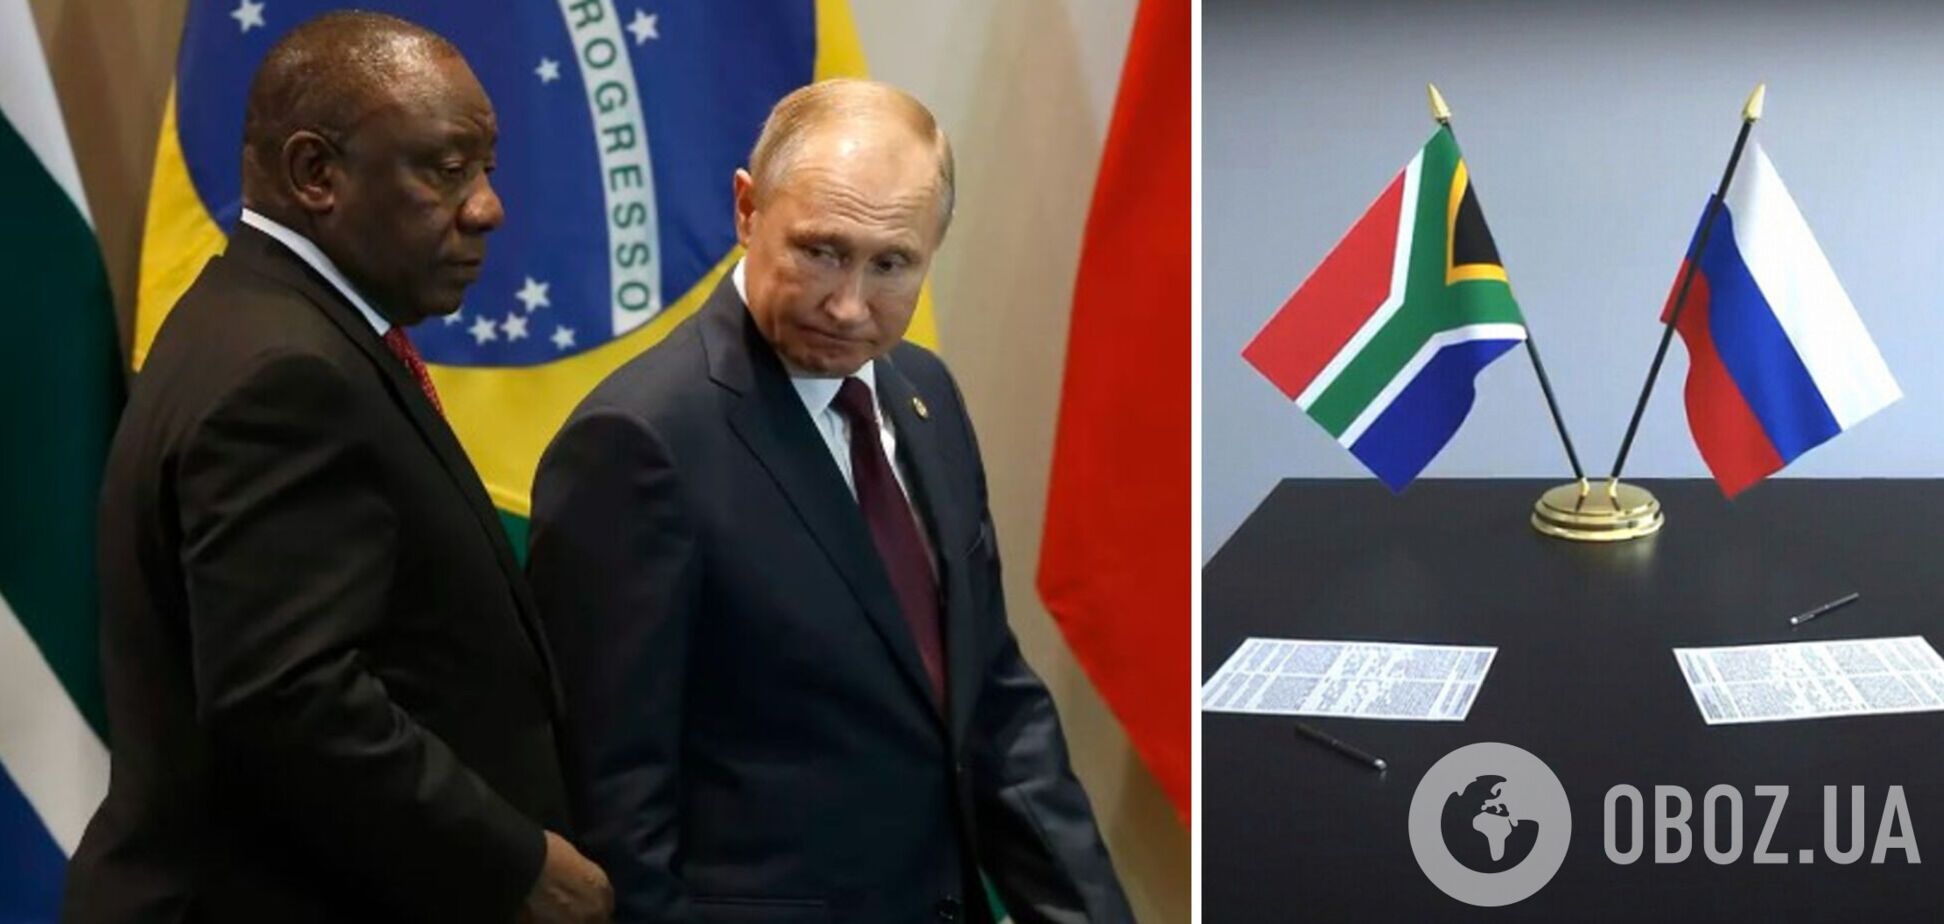 В августе Путин намерен принять участие в саммите в ЮАР: власти страны заявили, что понимают обязательства по ордеру Гаагского трибунала